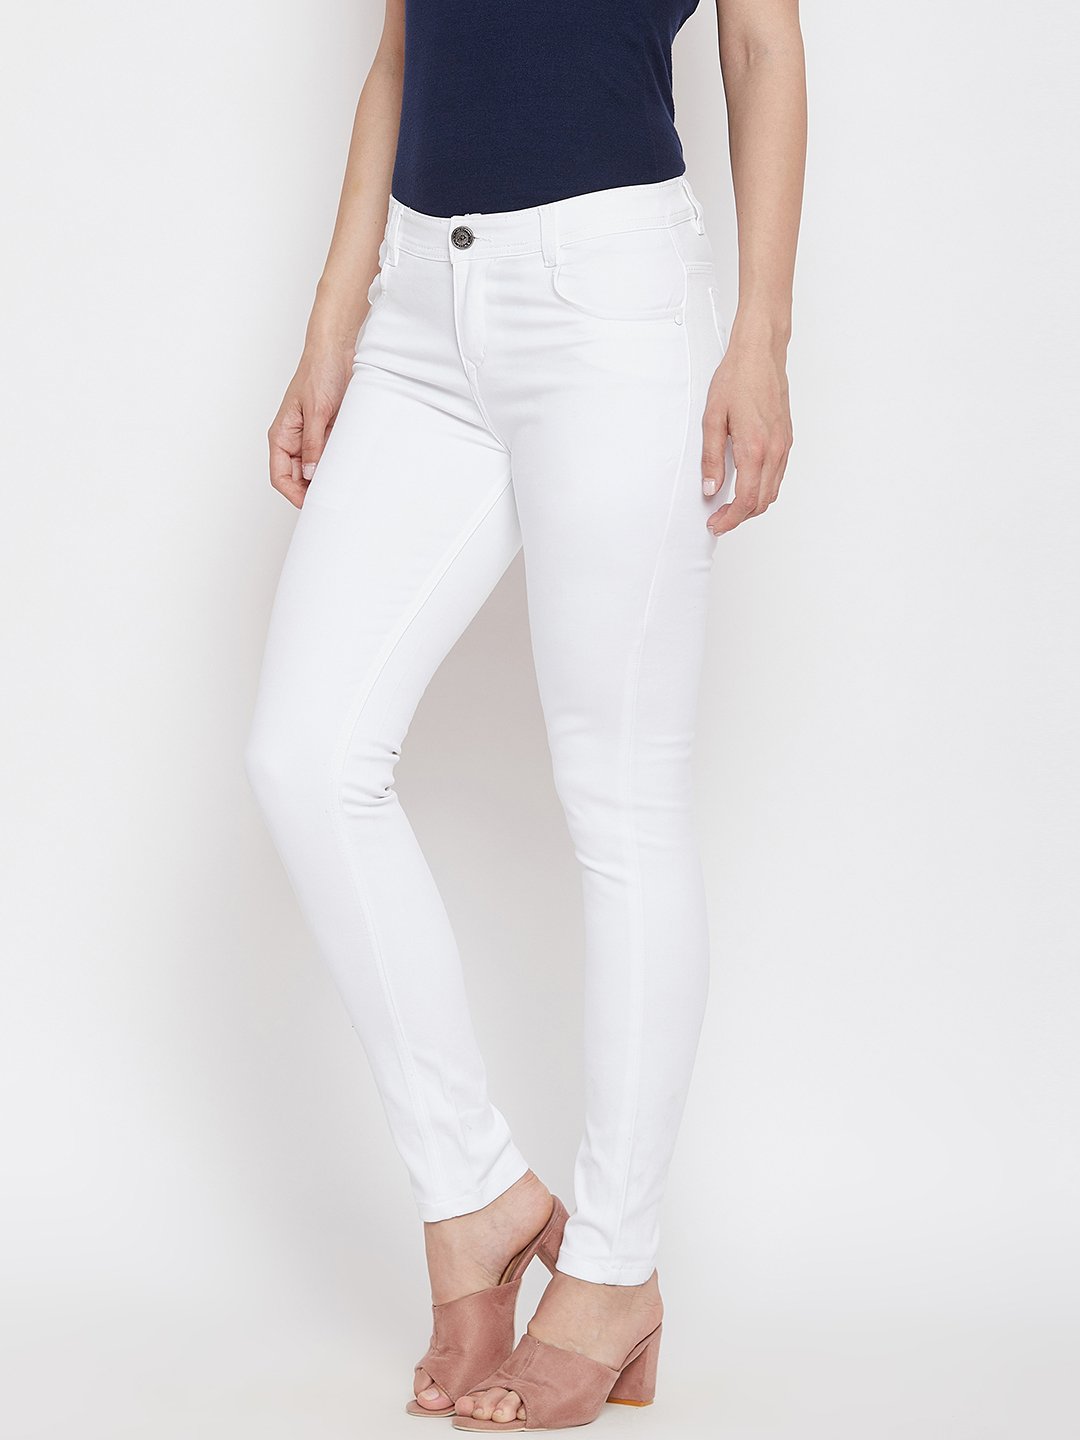 Kraus Jeans Skinny Women White Jeans - Buy Kraus Jeans Skinny Women White  Jeans Online at Best Prices in India | Flipkart.com